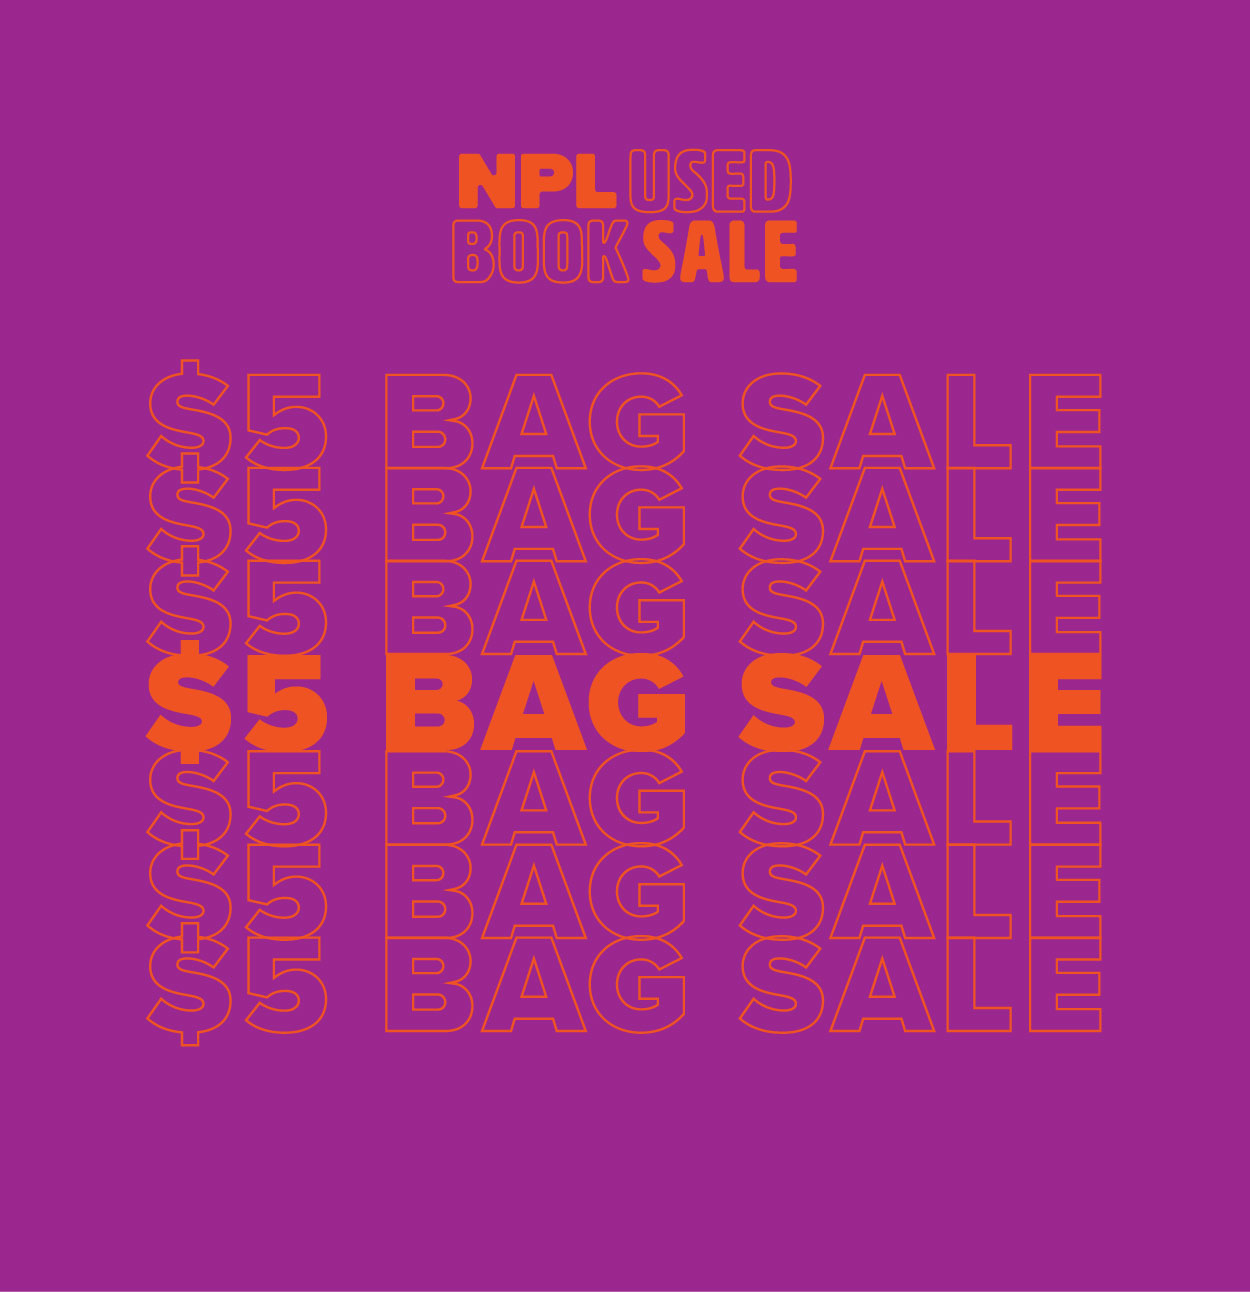 NPL Used Book Sale $5 Bag Sale